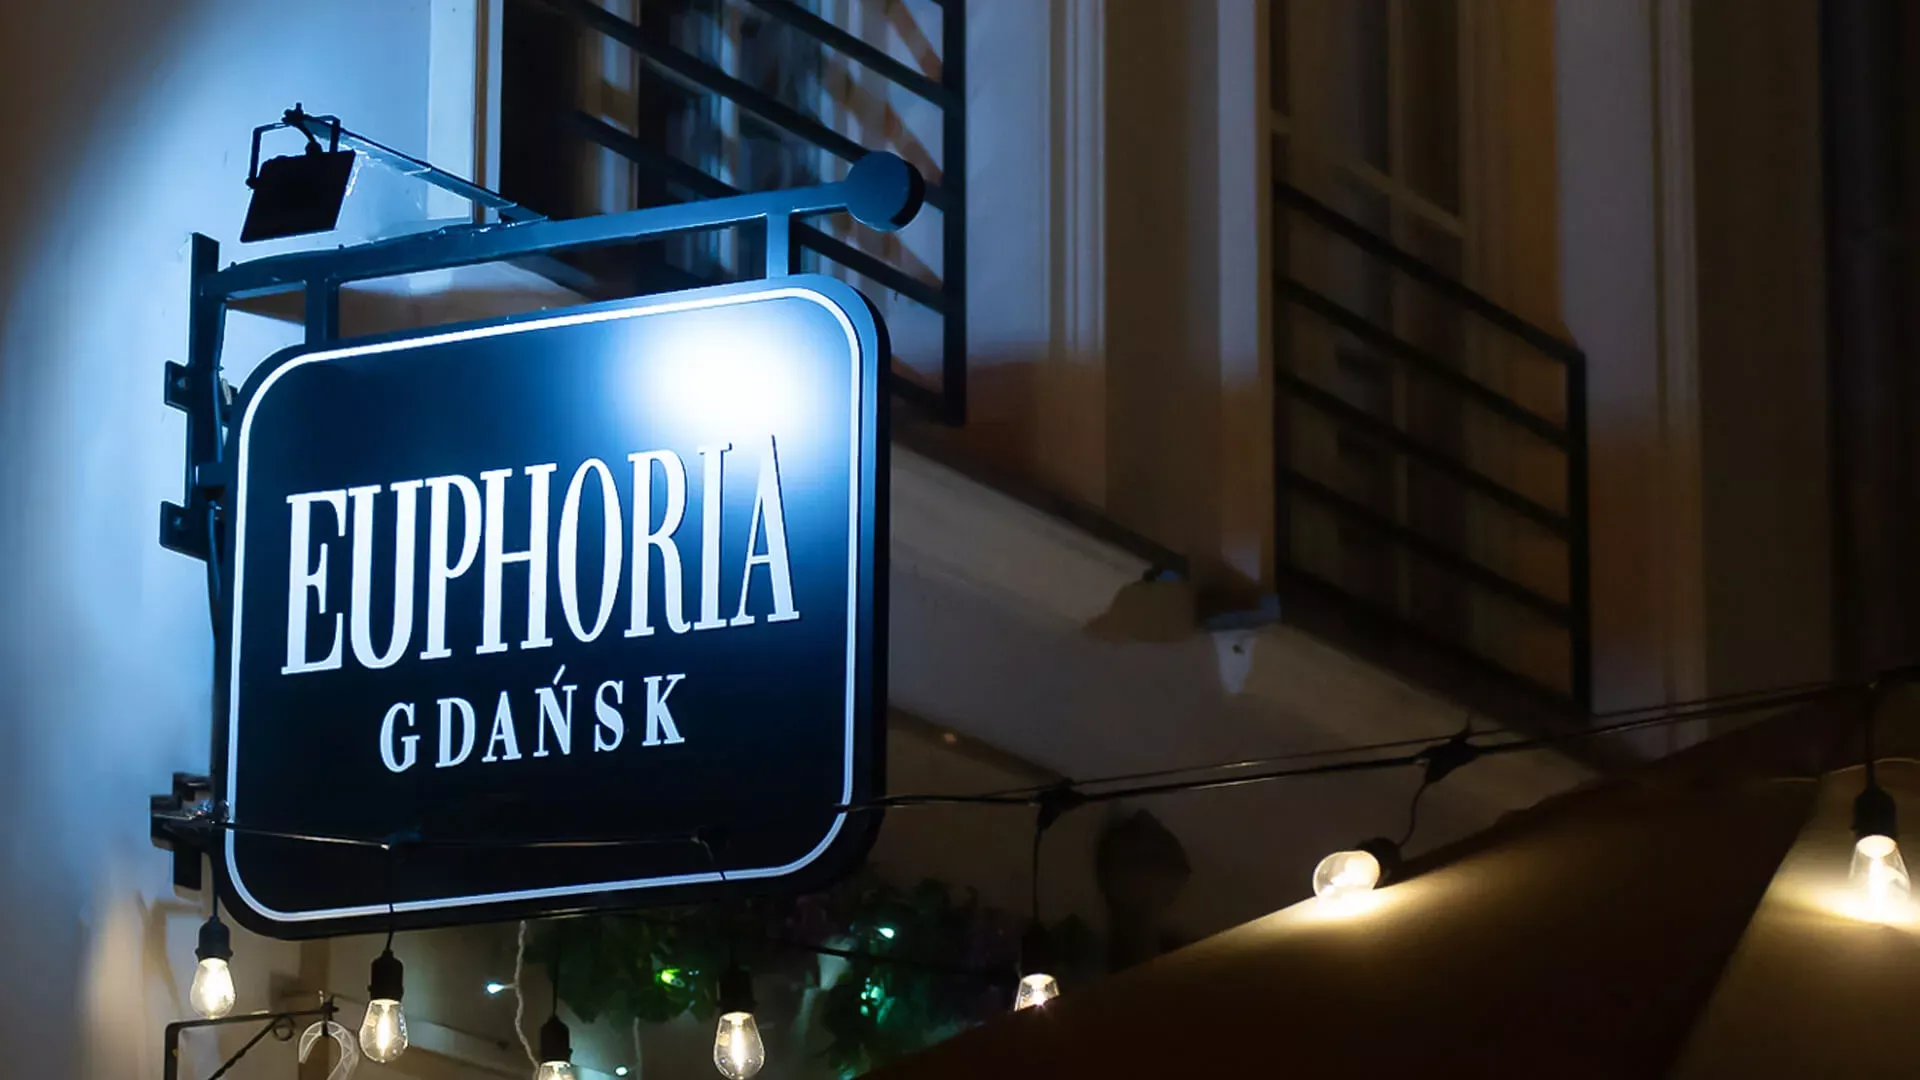 Euphoria Gdansk - loodrechte semafoor, dubbelzijdig in zwart met witte letters bij nacht